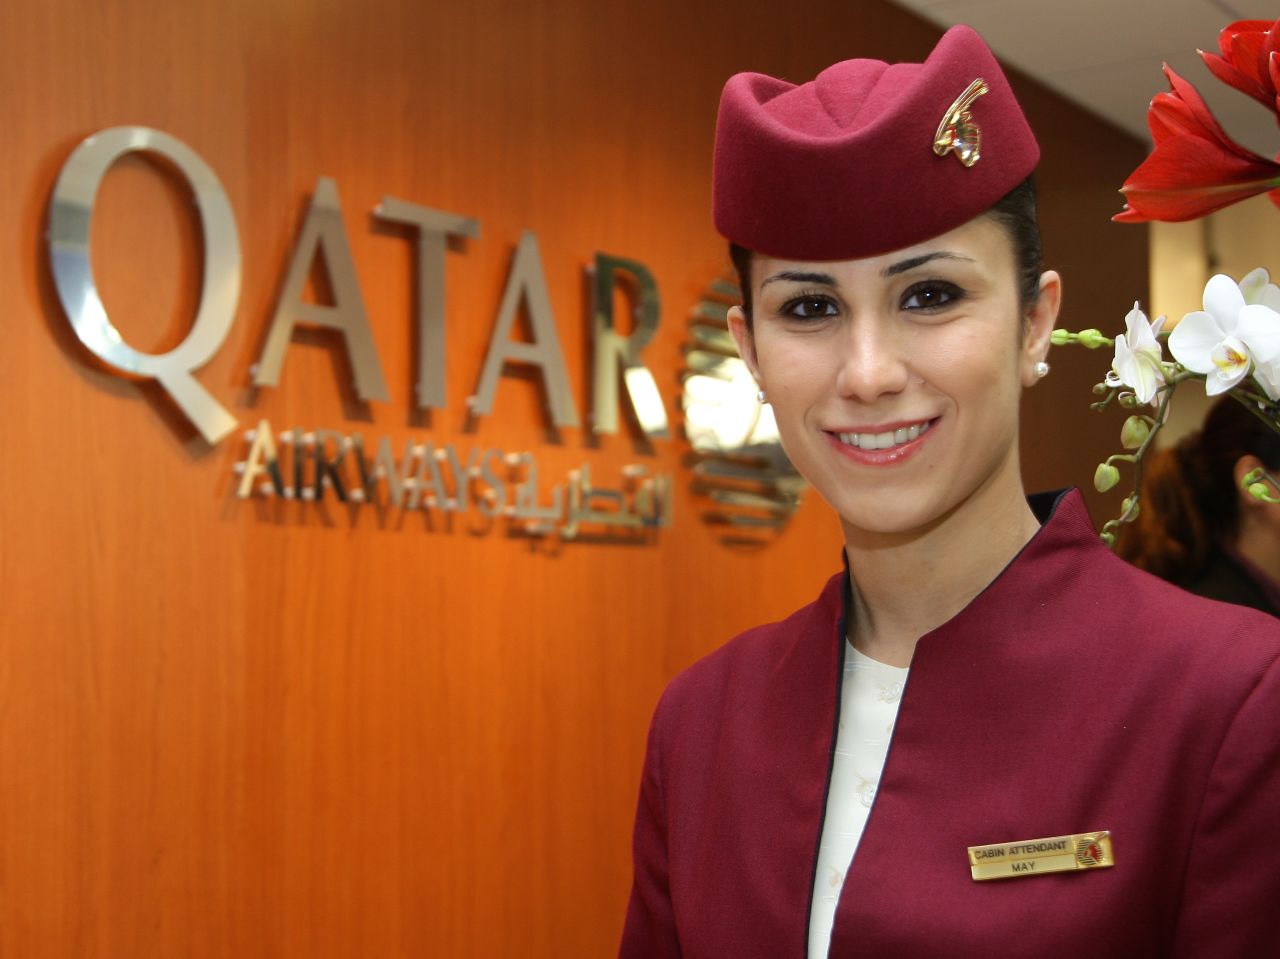 Qatar Airways was voted best business class. 